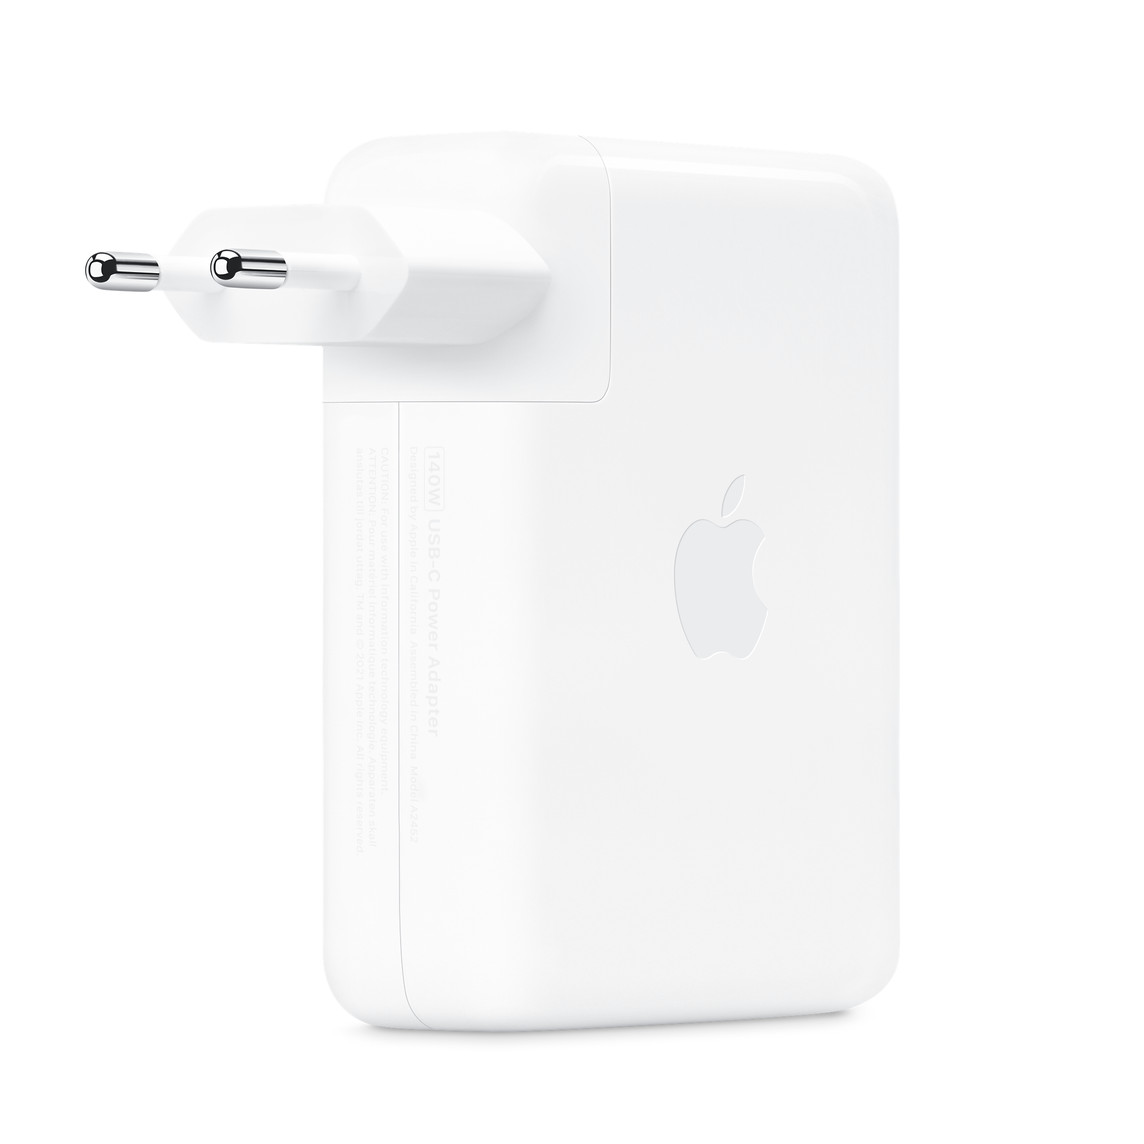 Блок питания Apple 140W USB-C Power Adapter Original Без коробки, картинка 1